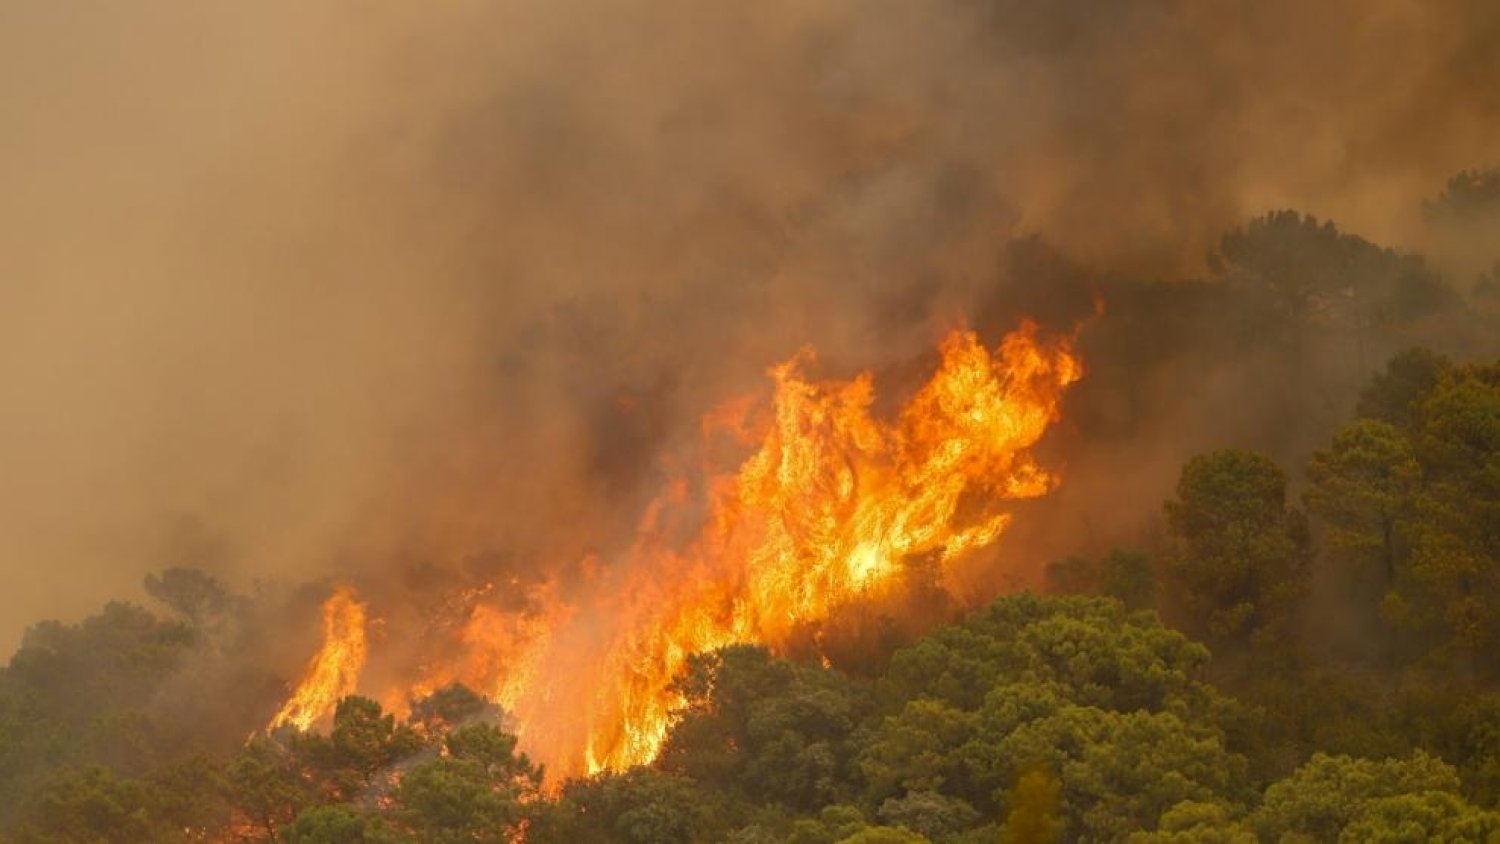 Moreno quiere endurecer el código penal contra los pirómanos tras el incendio de Sierra Bermeja